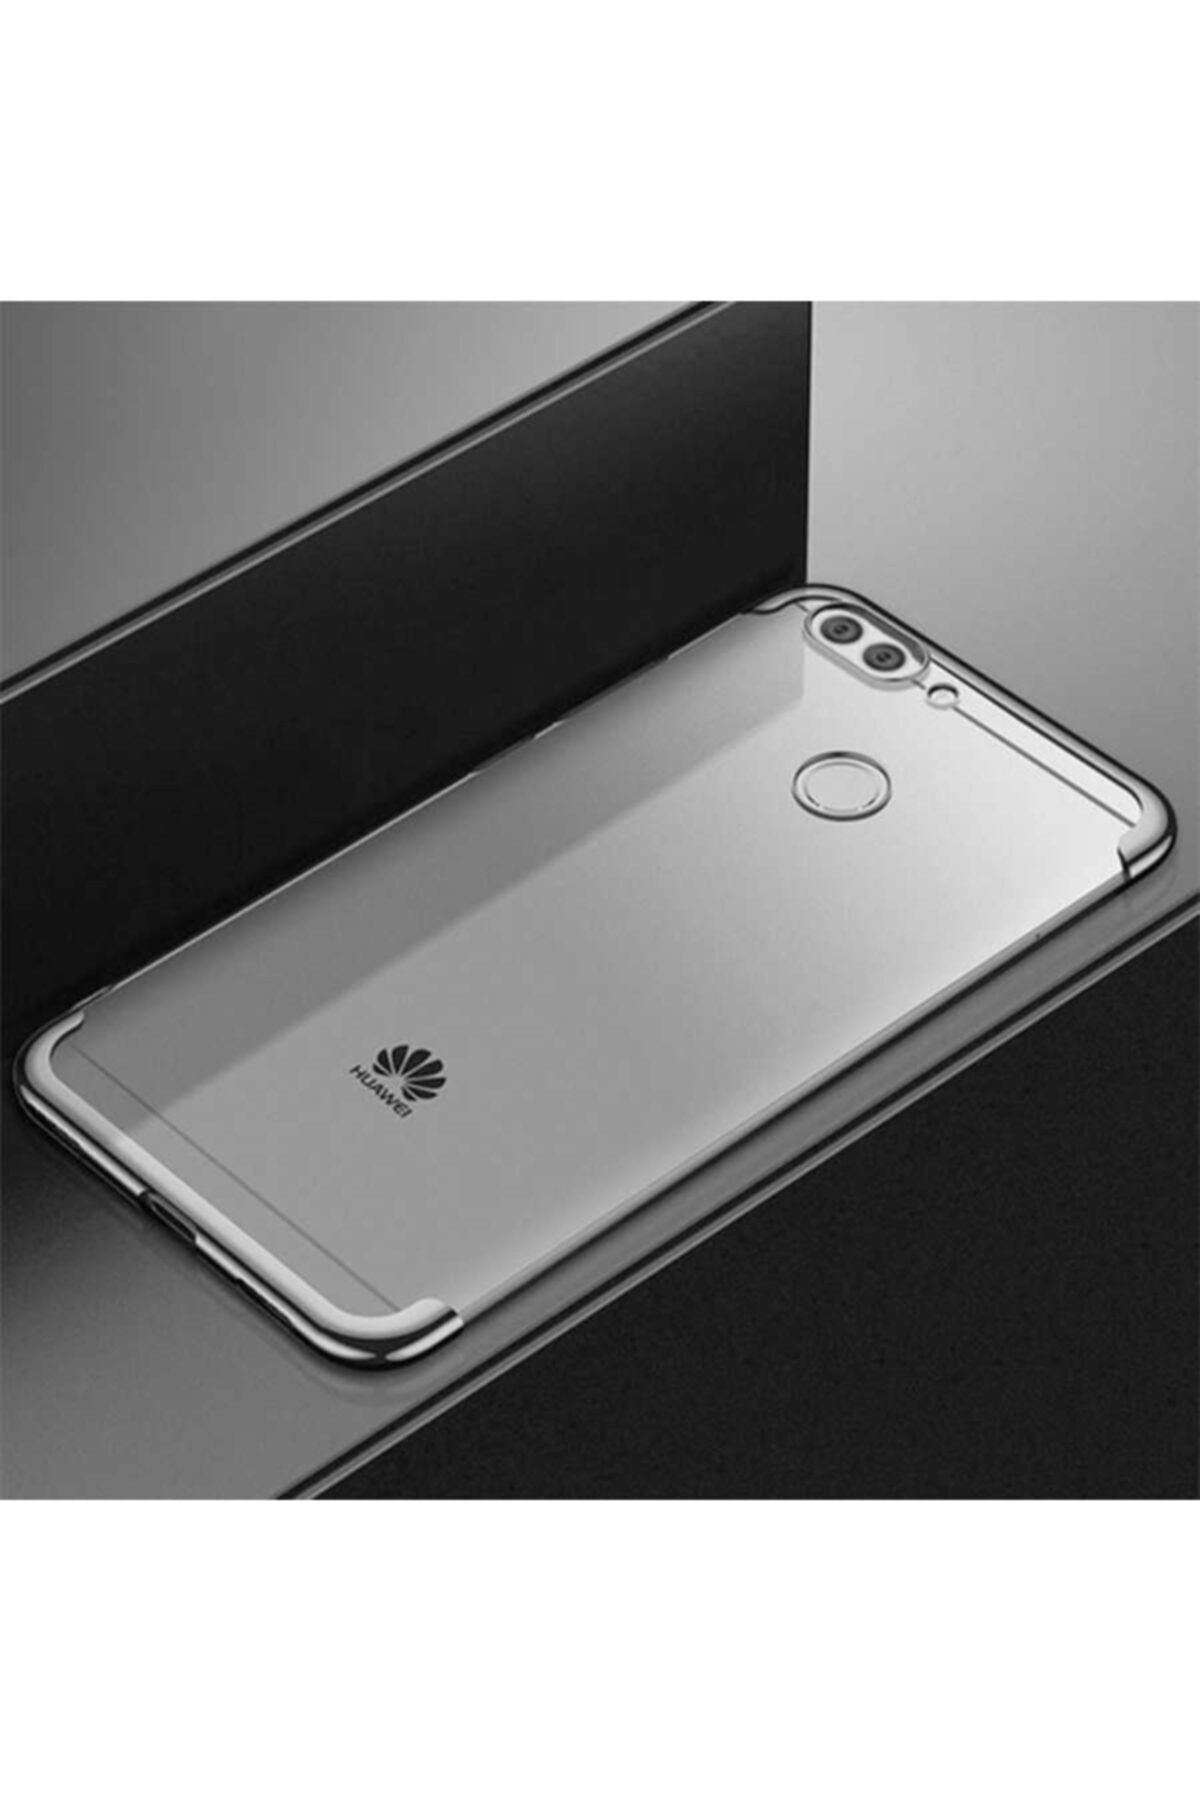 Srh Huawei P Smart Için Uyumlu Kenarları Lazer Boyalı Yumuşak Renkli Silikon Kılıf Kapak